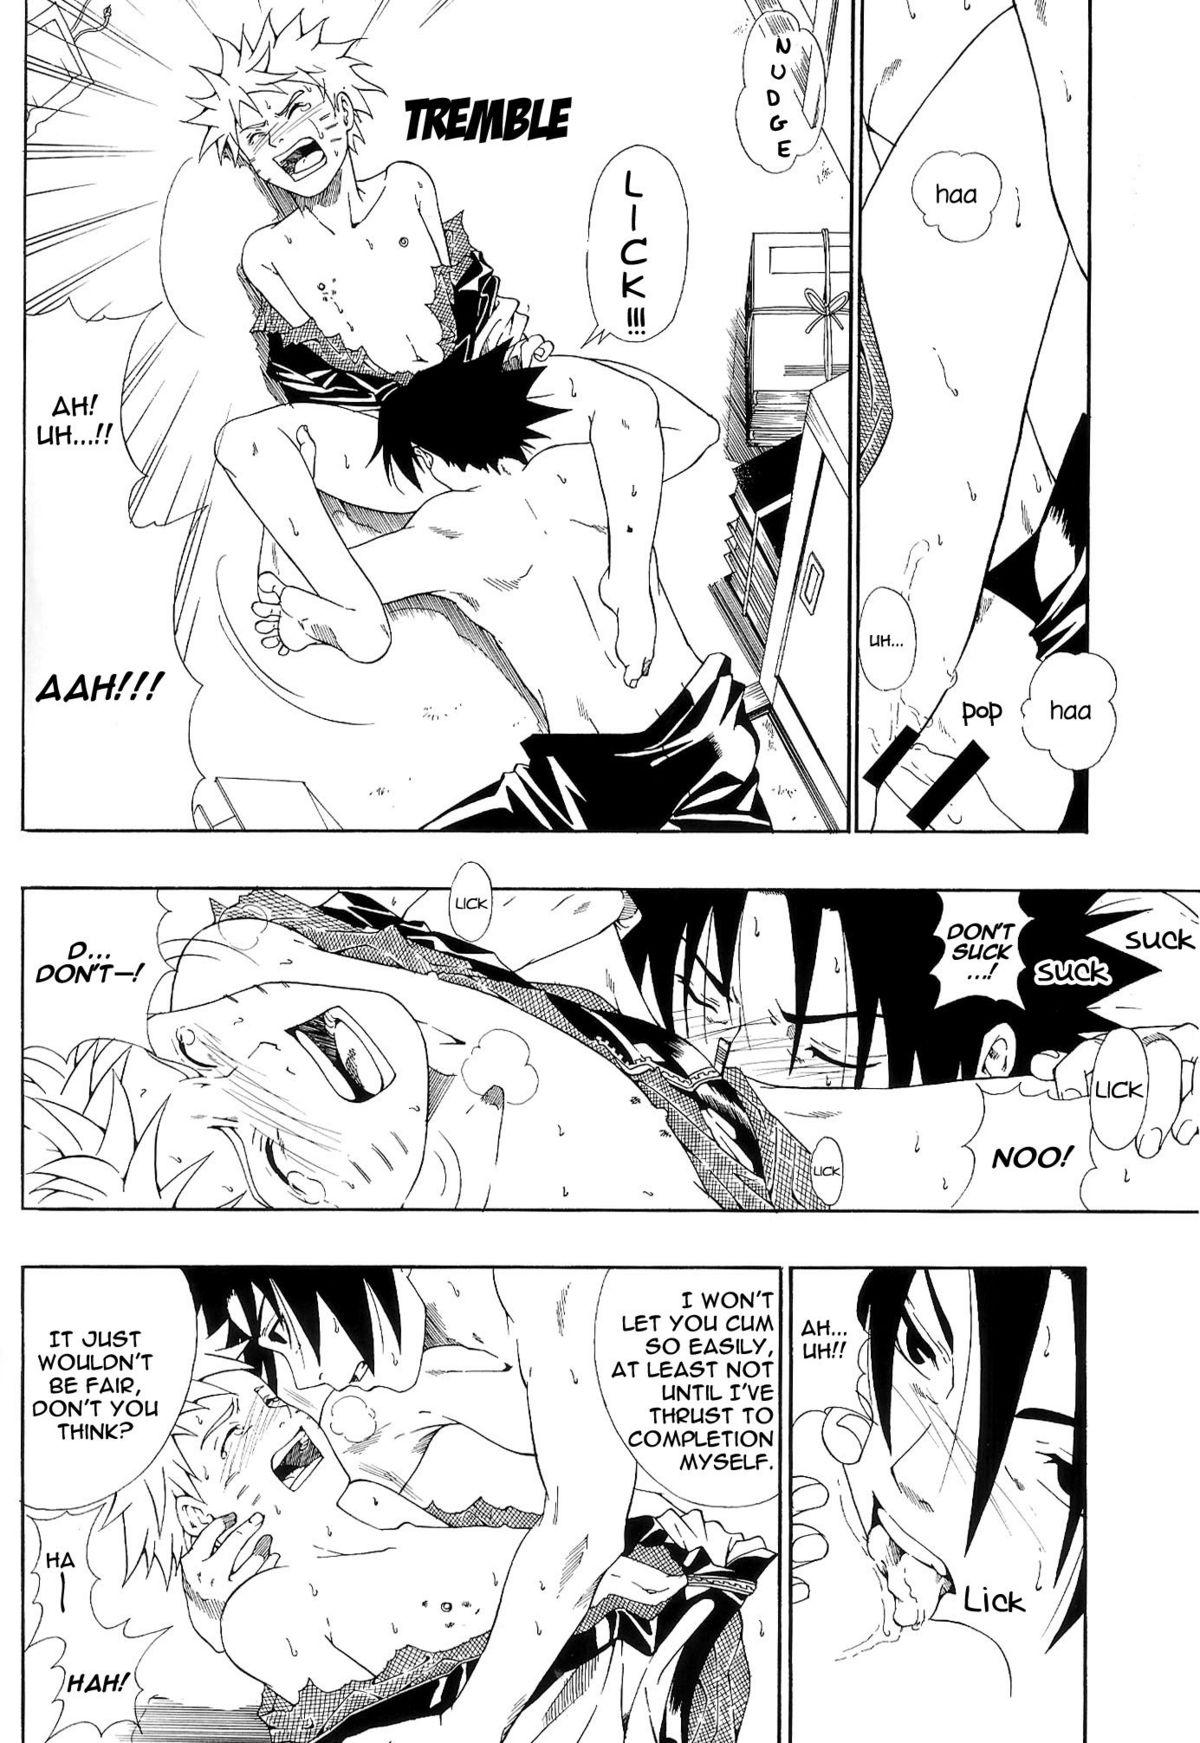 Story ERO ERO²: Volume 1.5 (NARUTO) [Sasuke X Naruto] YAOI -ENG- - Naruto Jockstrap - Page 9